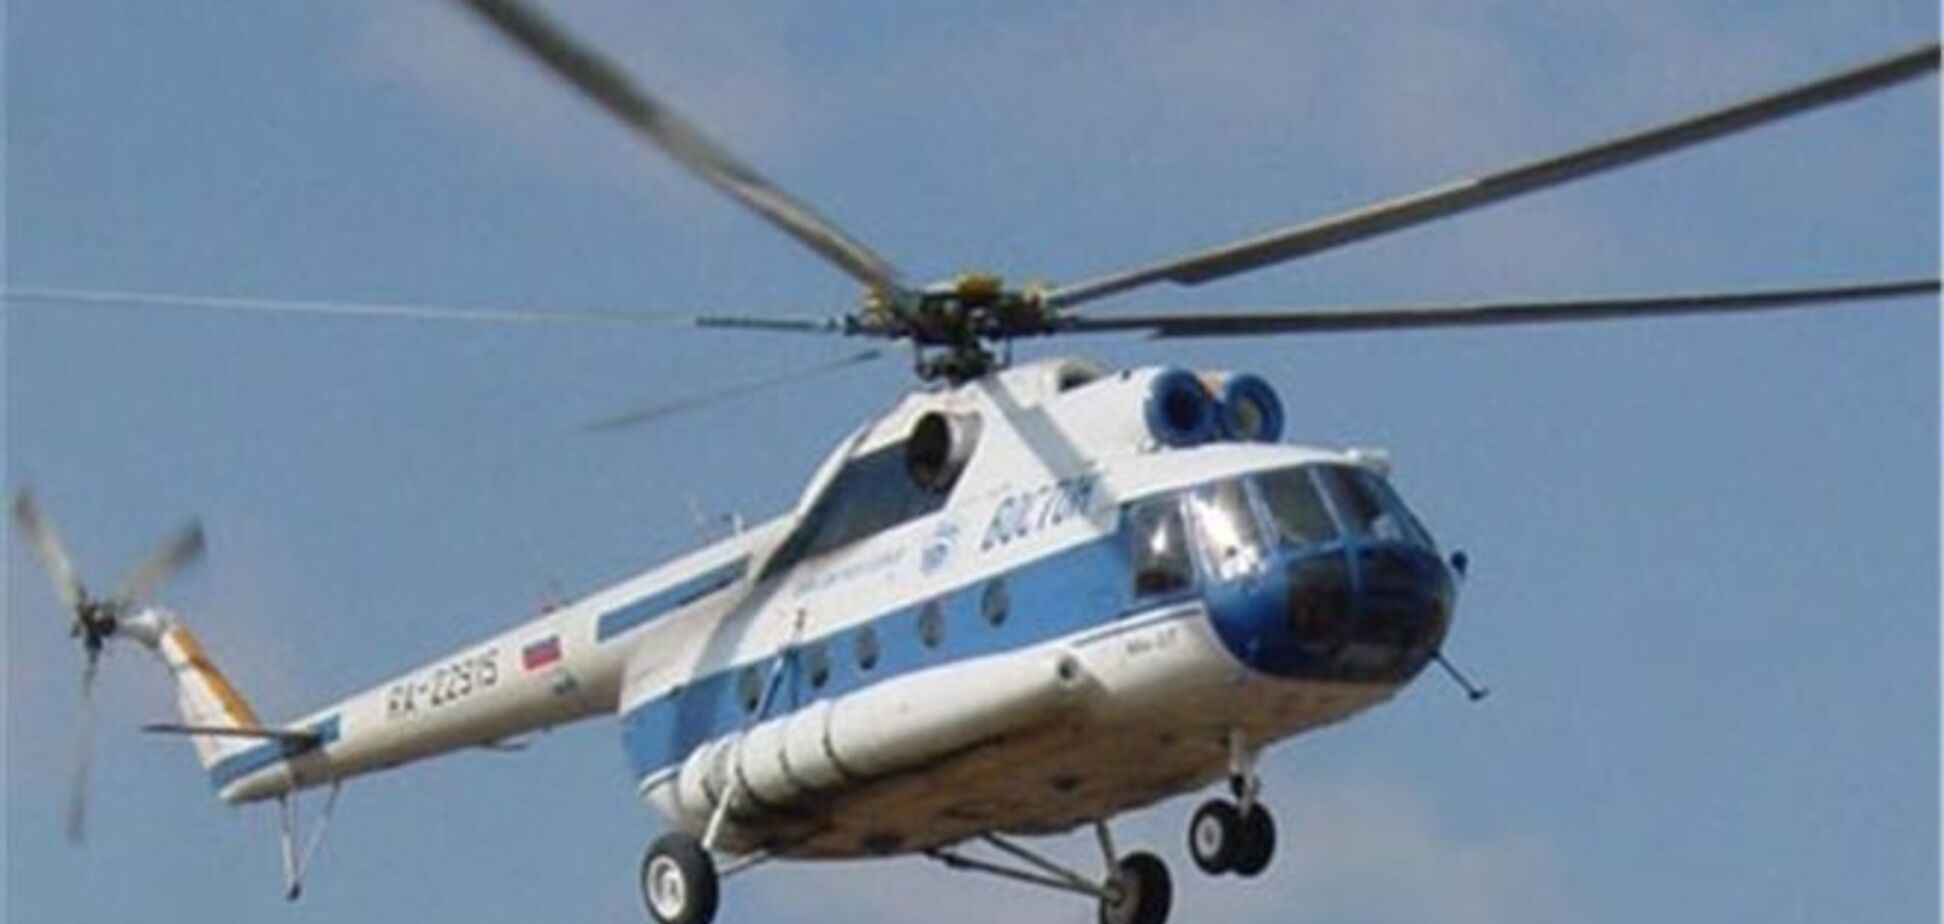 На захваченном в Судане вертолете украинцев нет – МОУ